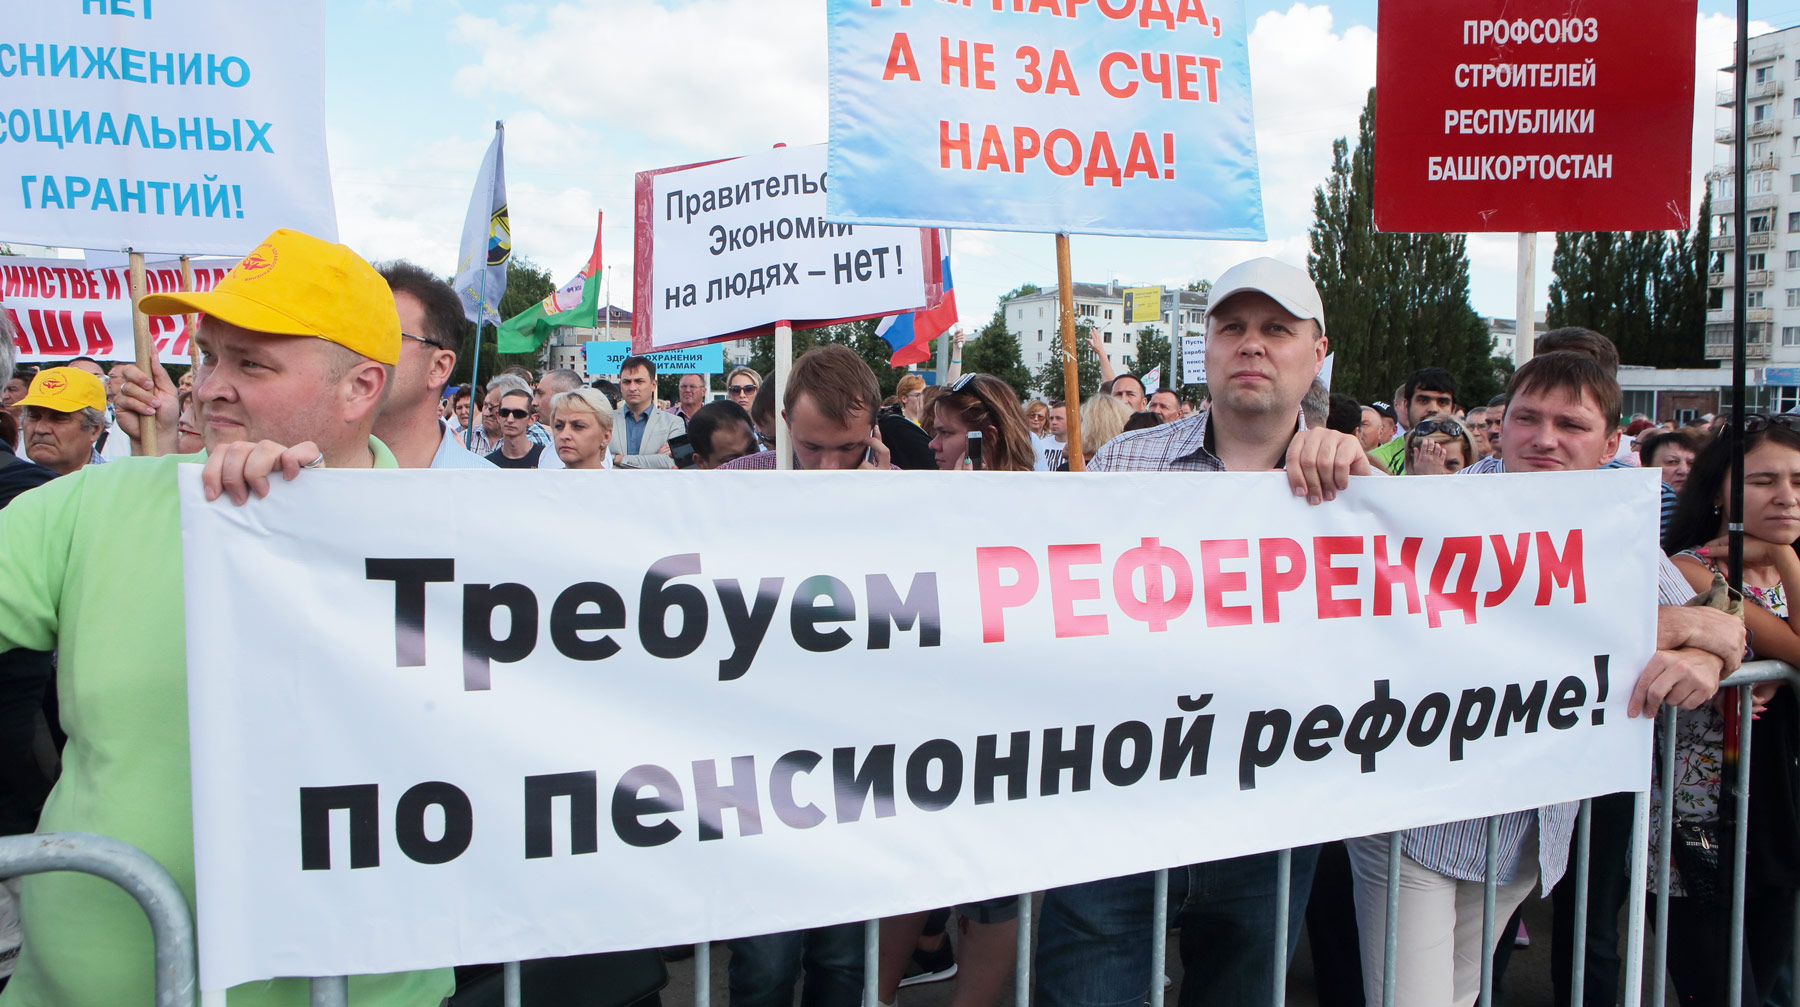 Если не удастся оспорить запрет на проведение пенсионного плебисцита в Конституционном суде, то эсеры намерены изменить закон Фото: © GLOBAL LOOK press / Zamir Usmanov